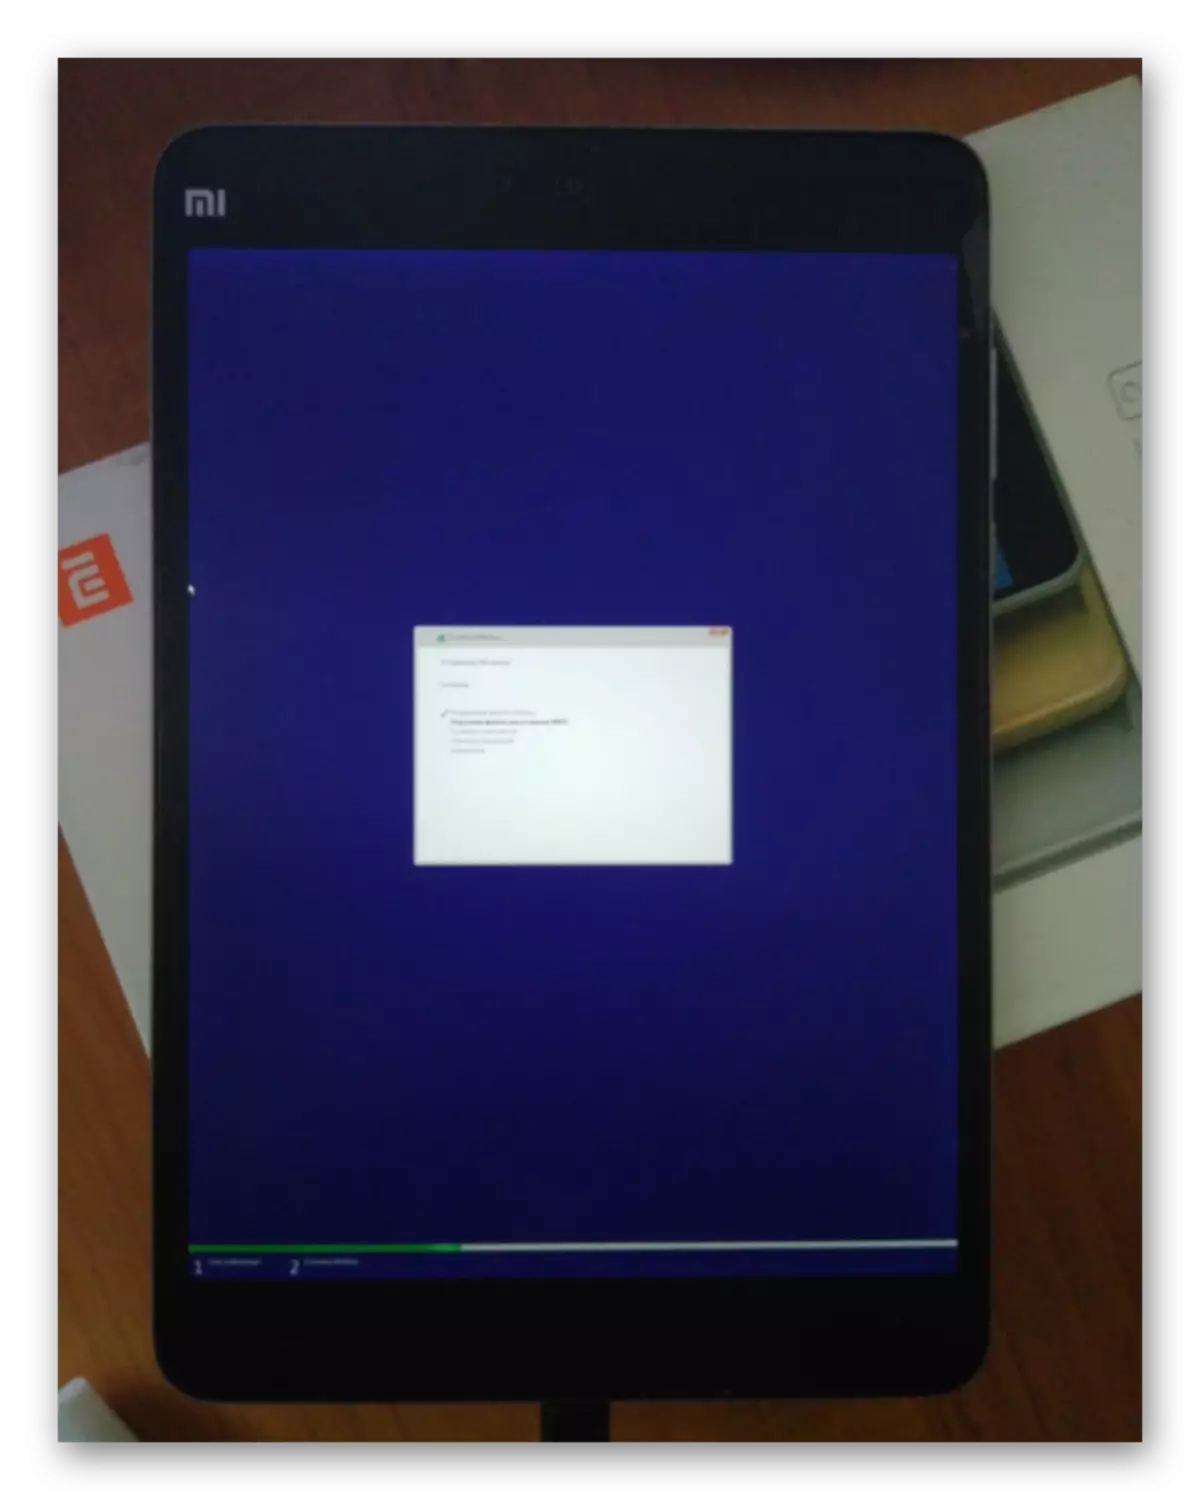 Xiaomi Mipad 2 Windows 10 Installasjonsprosessen varer mer enn en time